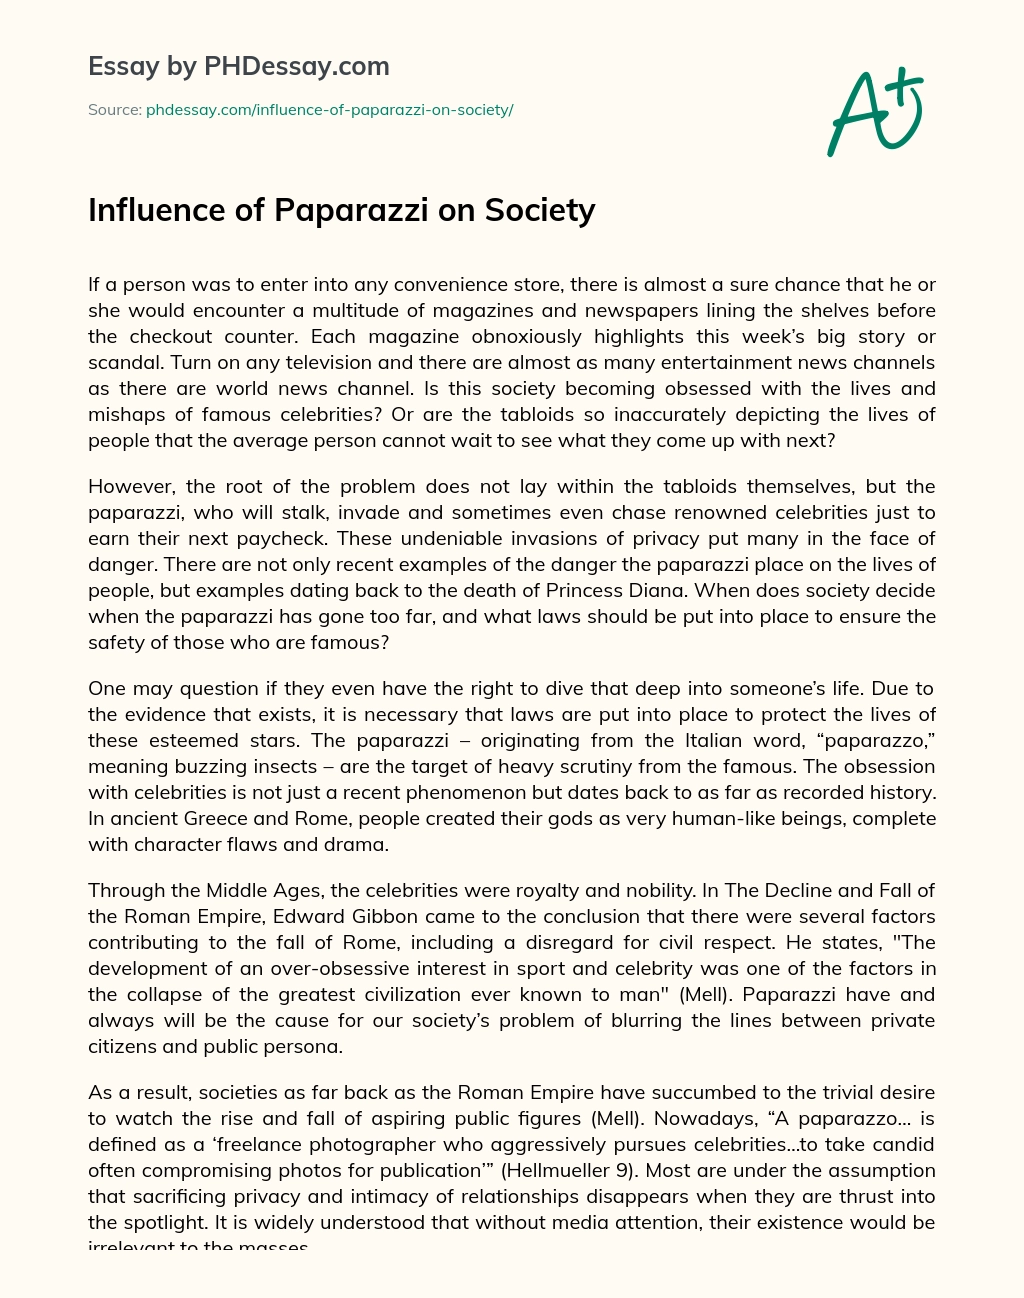 Influence of Paparazzi on Society essay